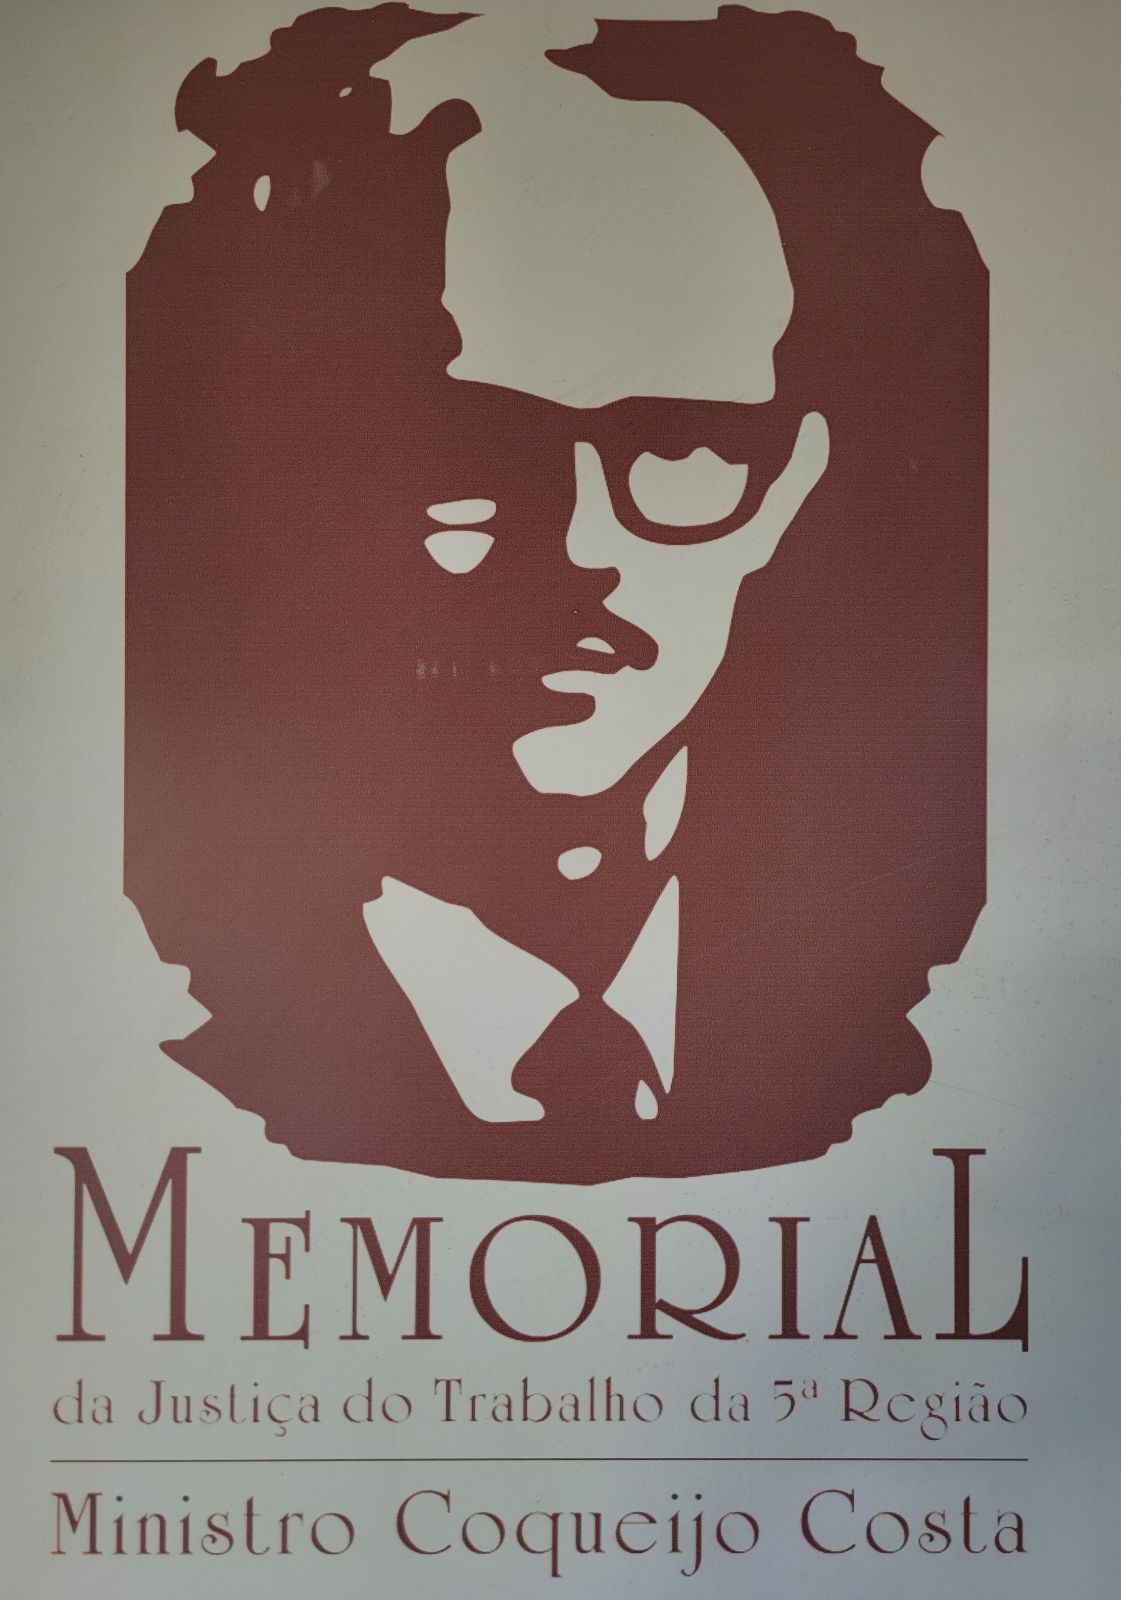  marca do memorial na notícia